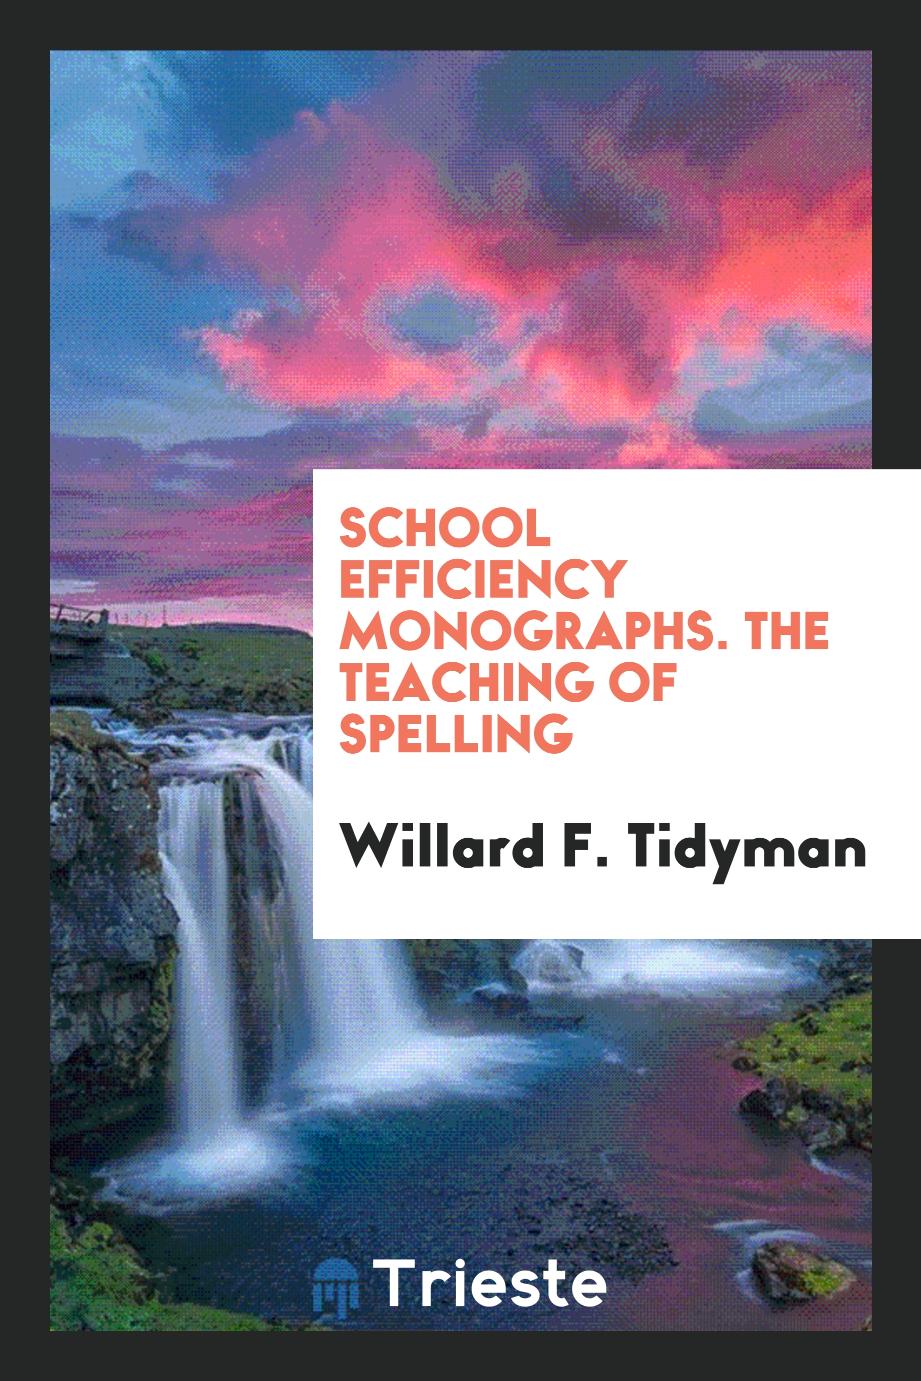 School efficiency monographs. The teaching of spelling